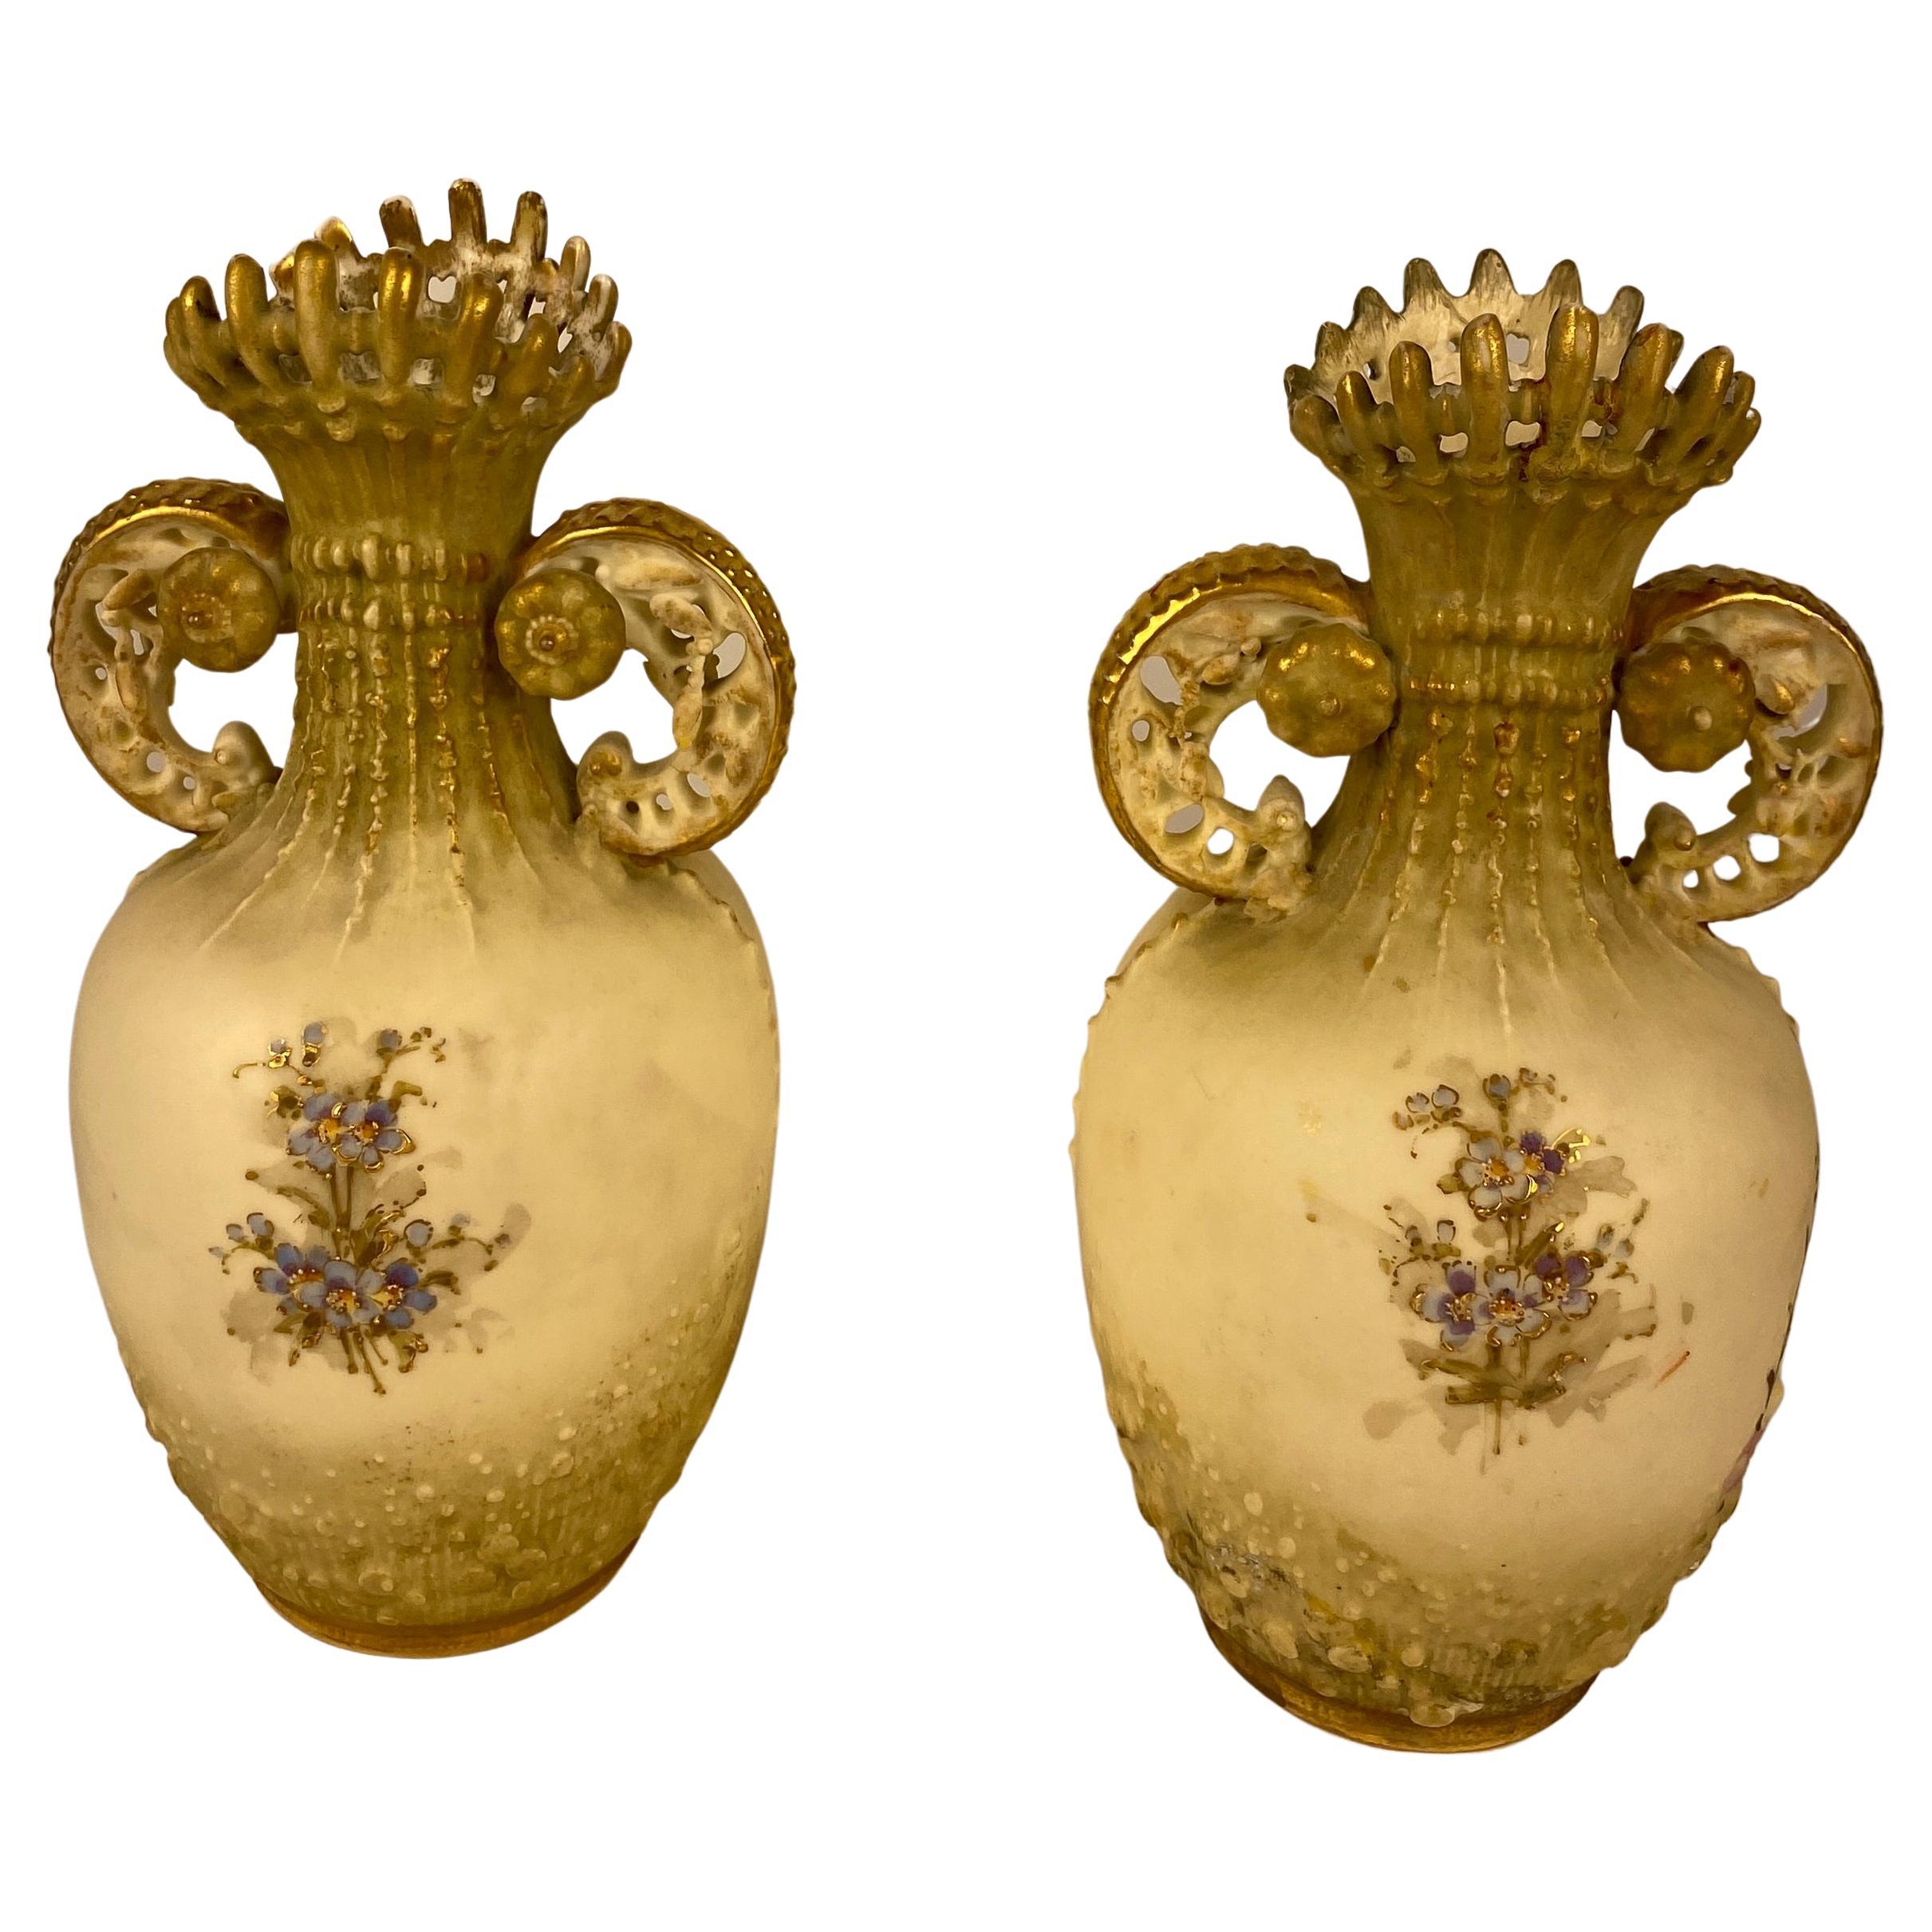 Une superbe paire de vases réalisés à la manière des pièces de Royal Worcester fabriquées vers 1890. Ces vases ont une forme unique et sont ornés d'un lotus japonais de couleur ivoire.

Ce style a été influencé par les merveilleux objets d'art